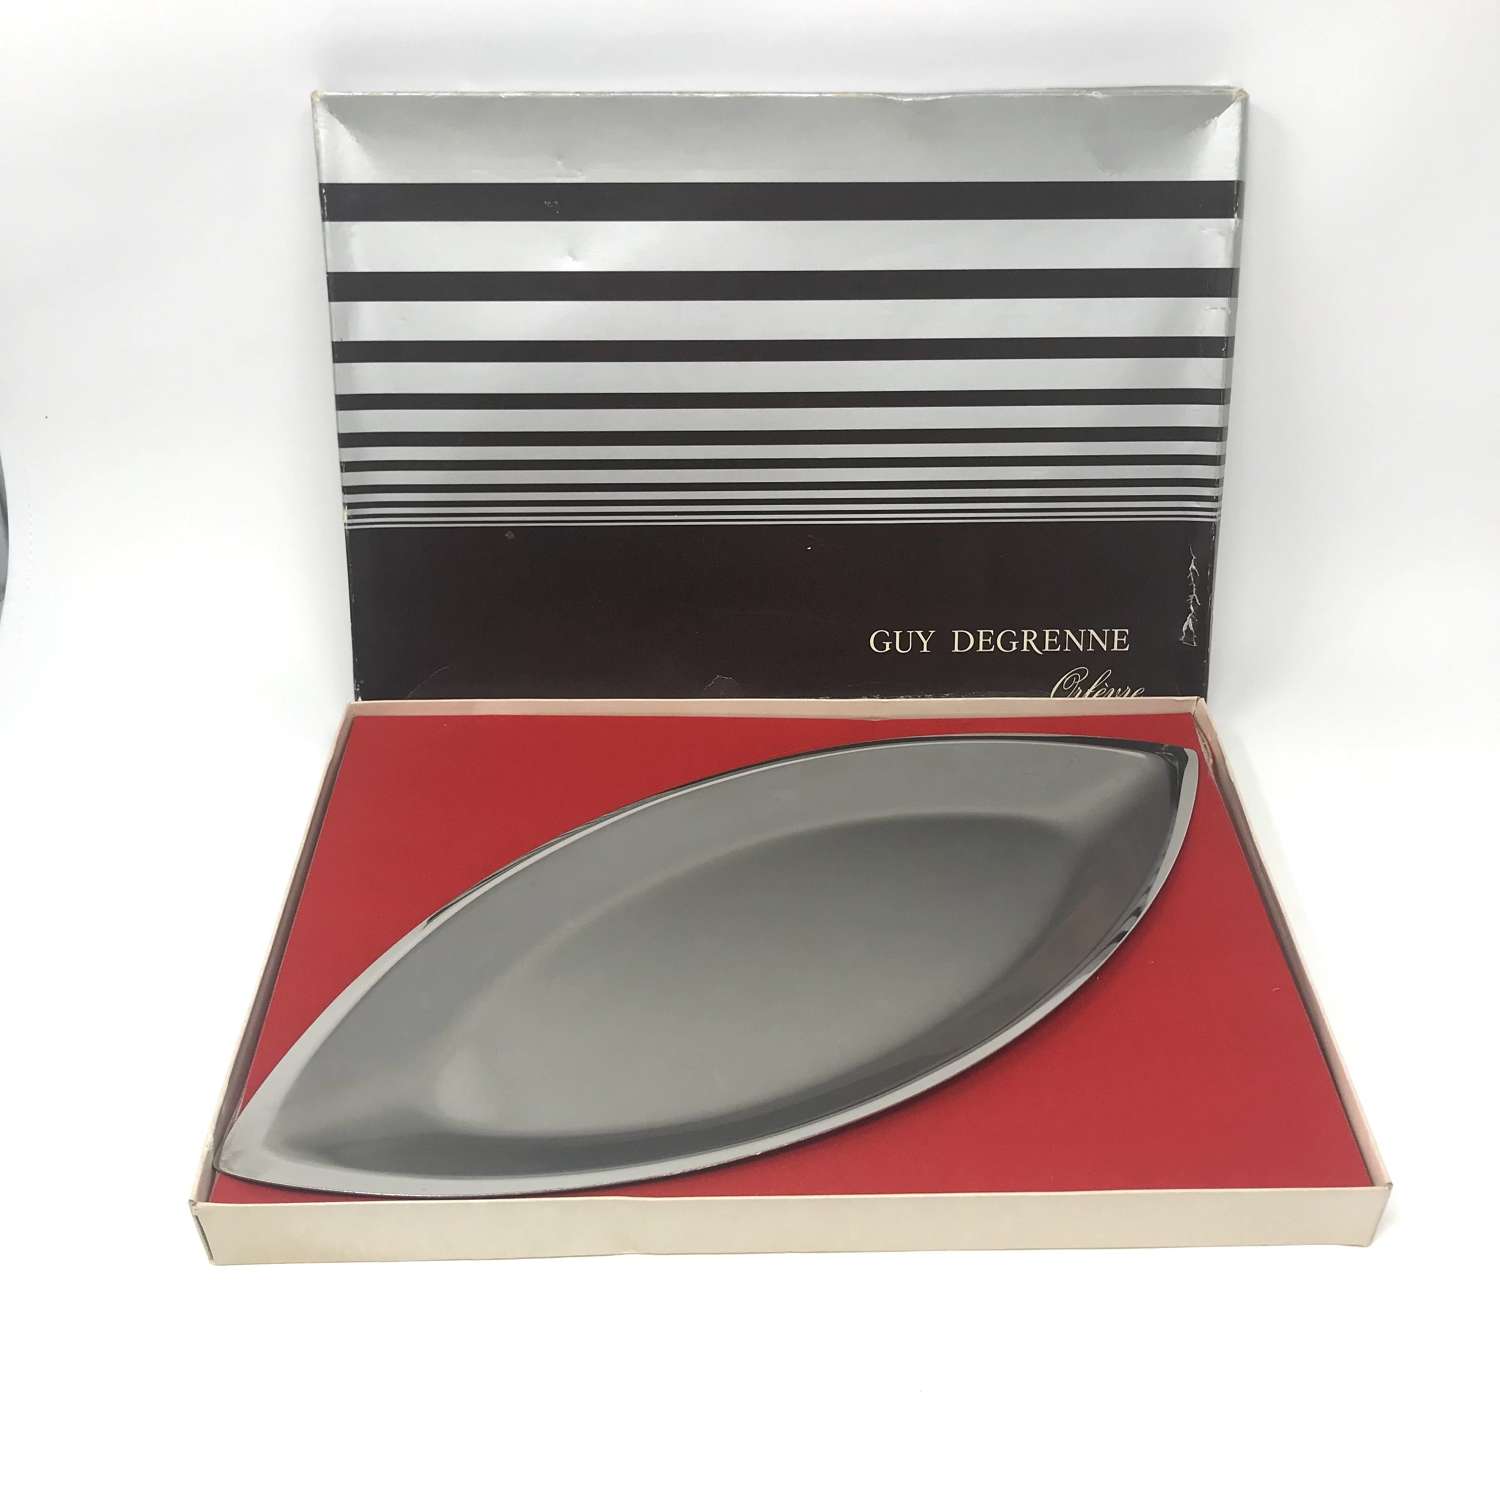 Guy Degrenne stainless steel platter in box France c1960s